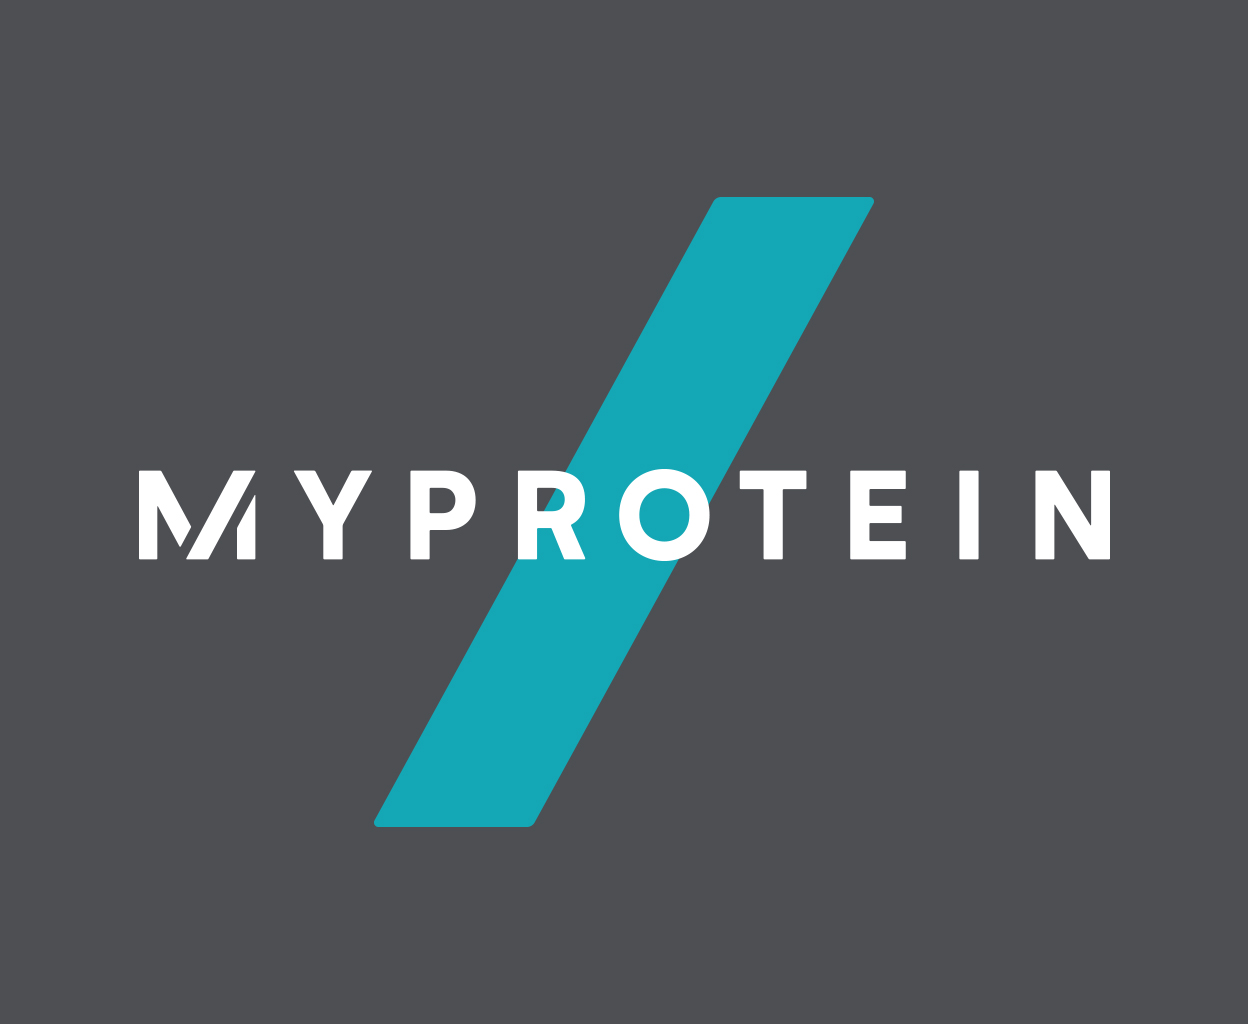 Myprotein Hong Kong